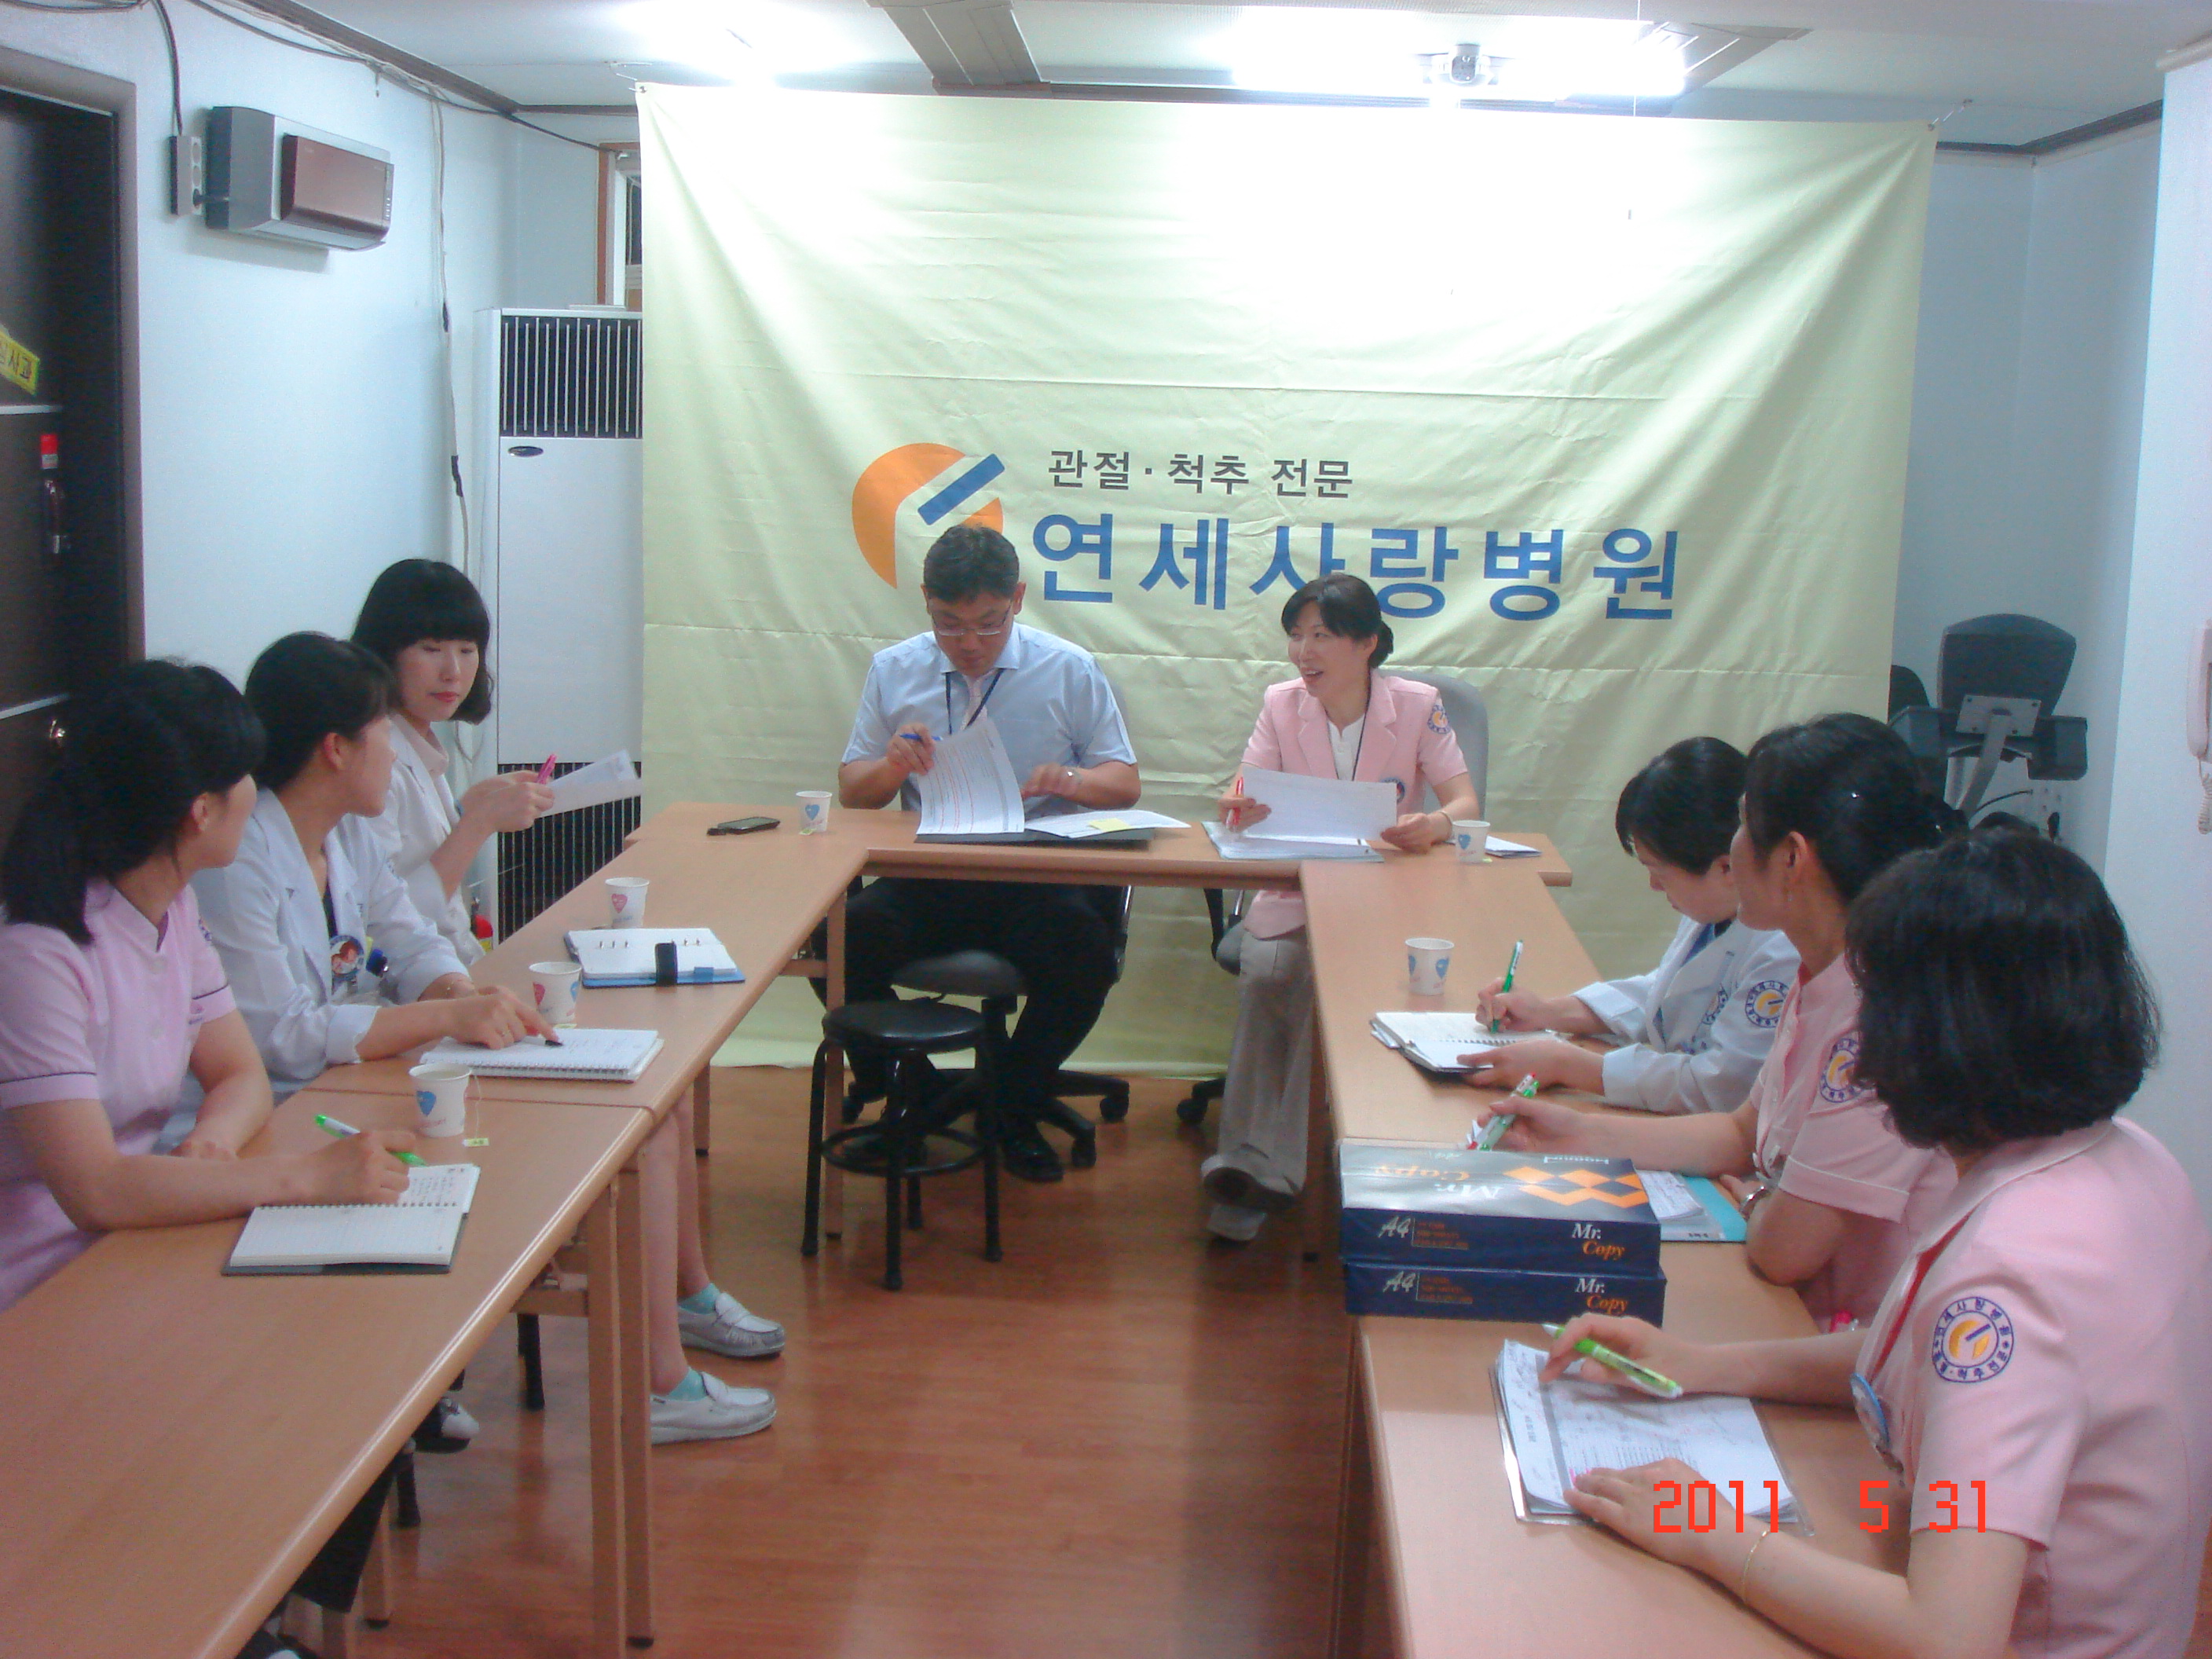 [강북점] 2011년 5월 31일 - 실무진 회의 개최 게시글의 2번째 첨부파일입니다.